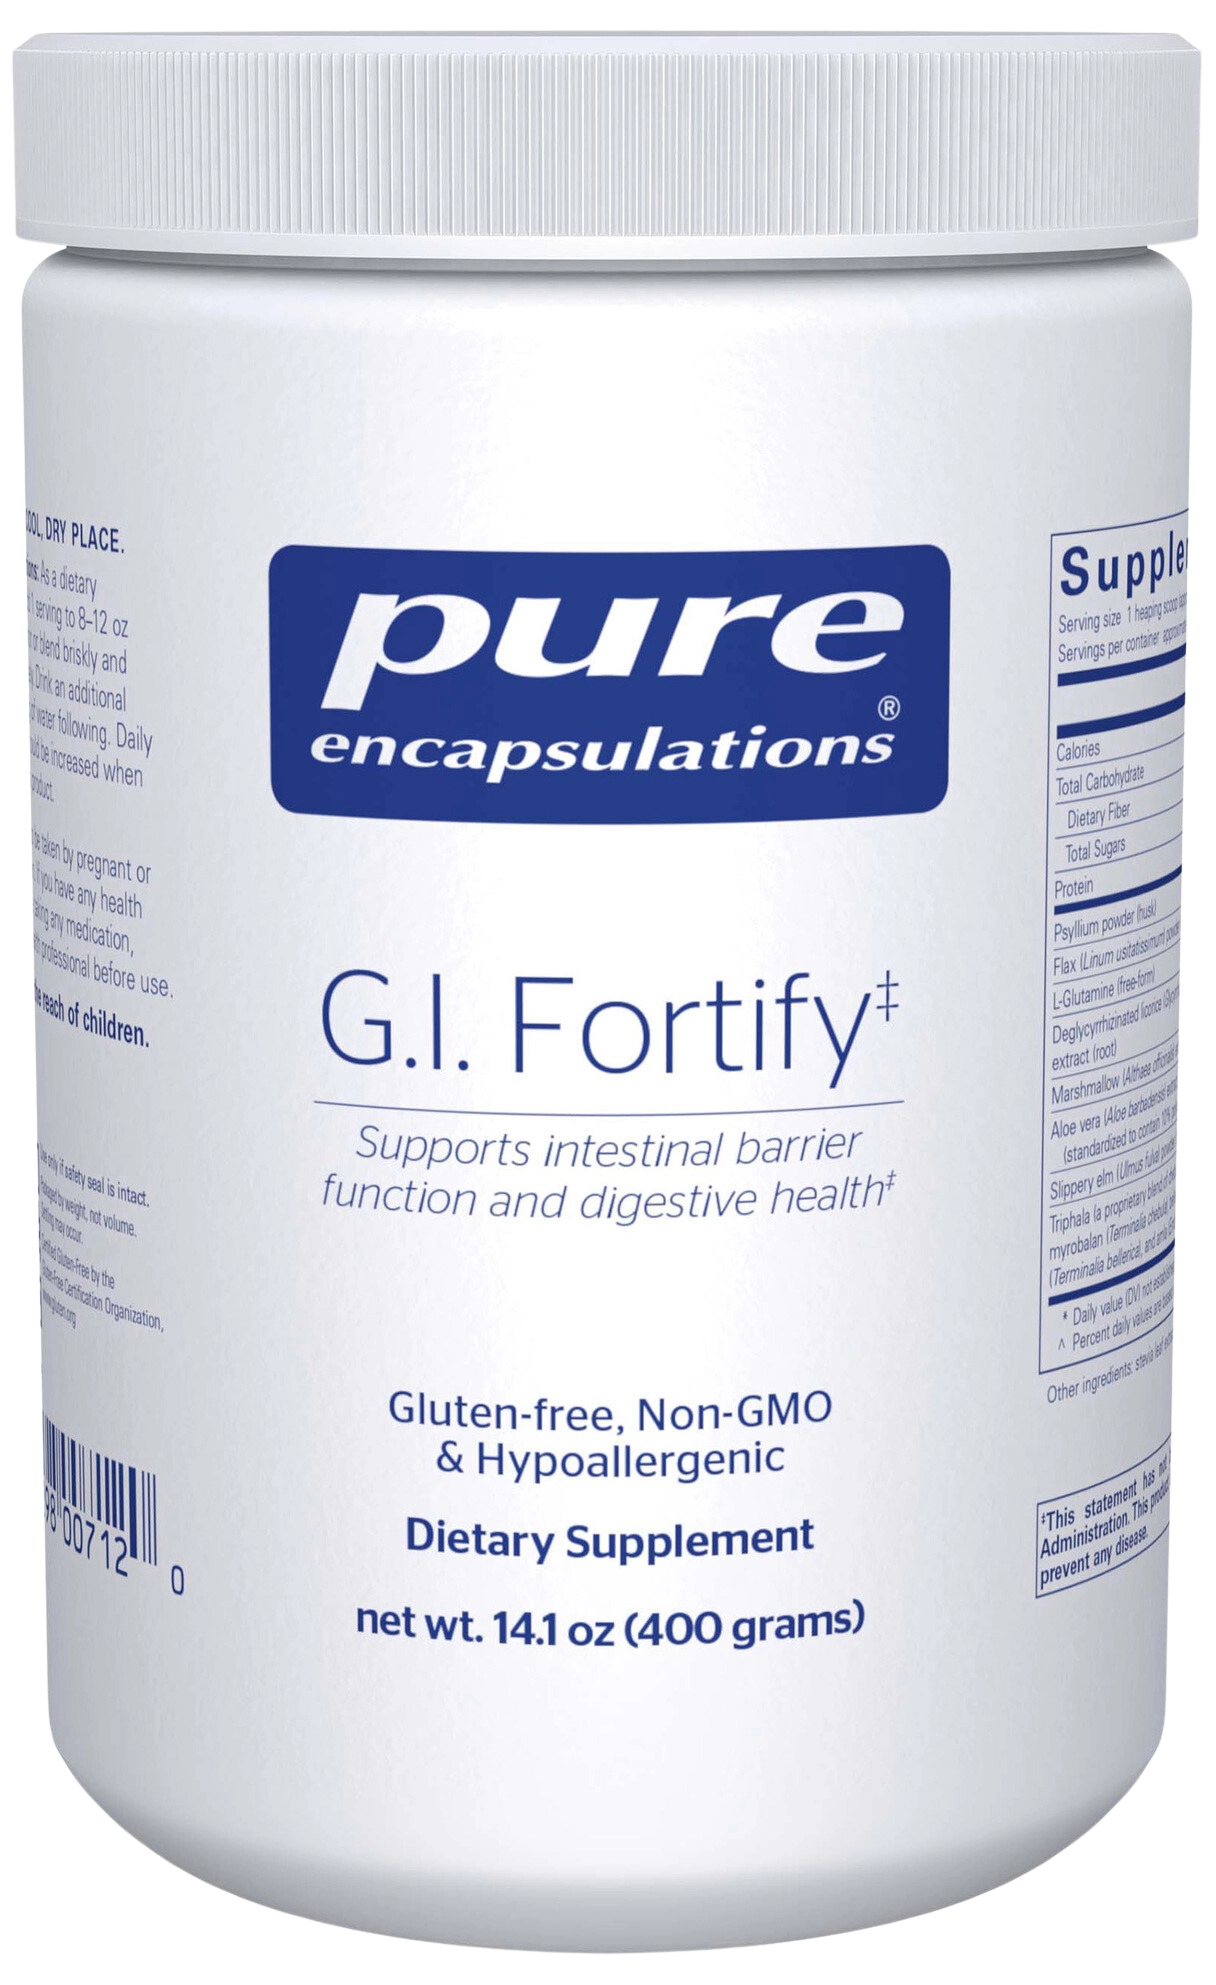 G.I. Fortify Powder